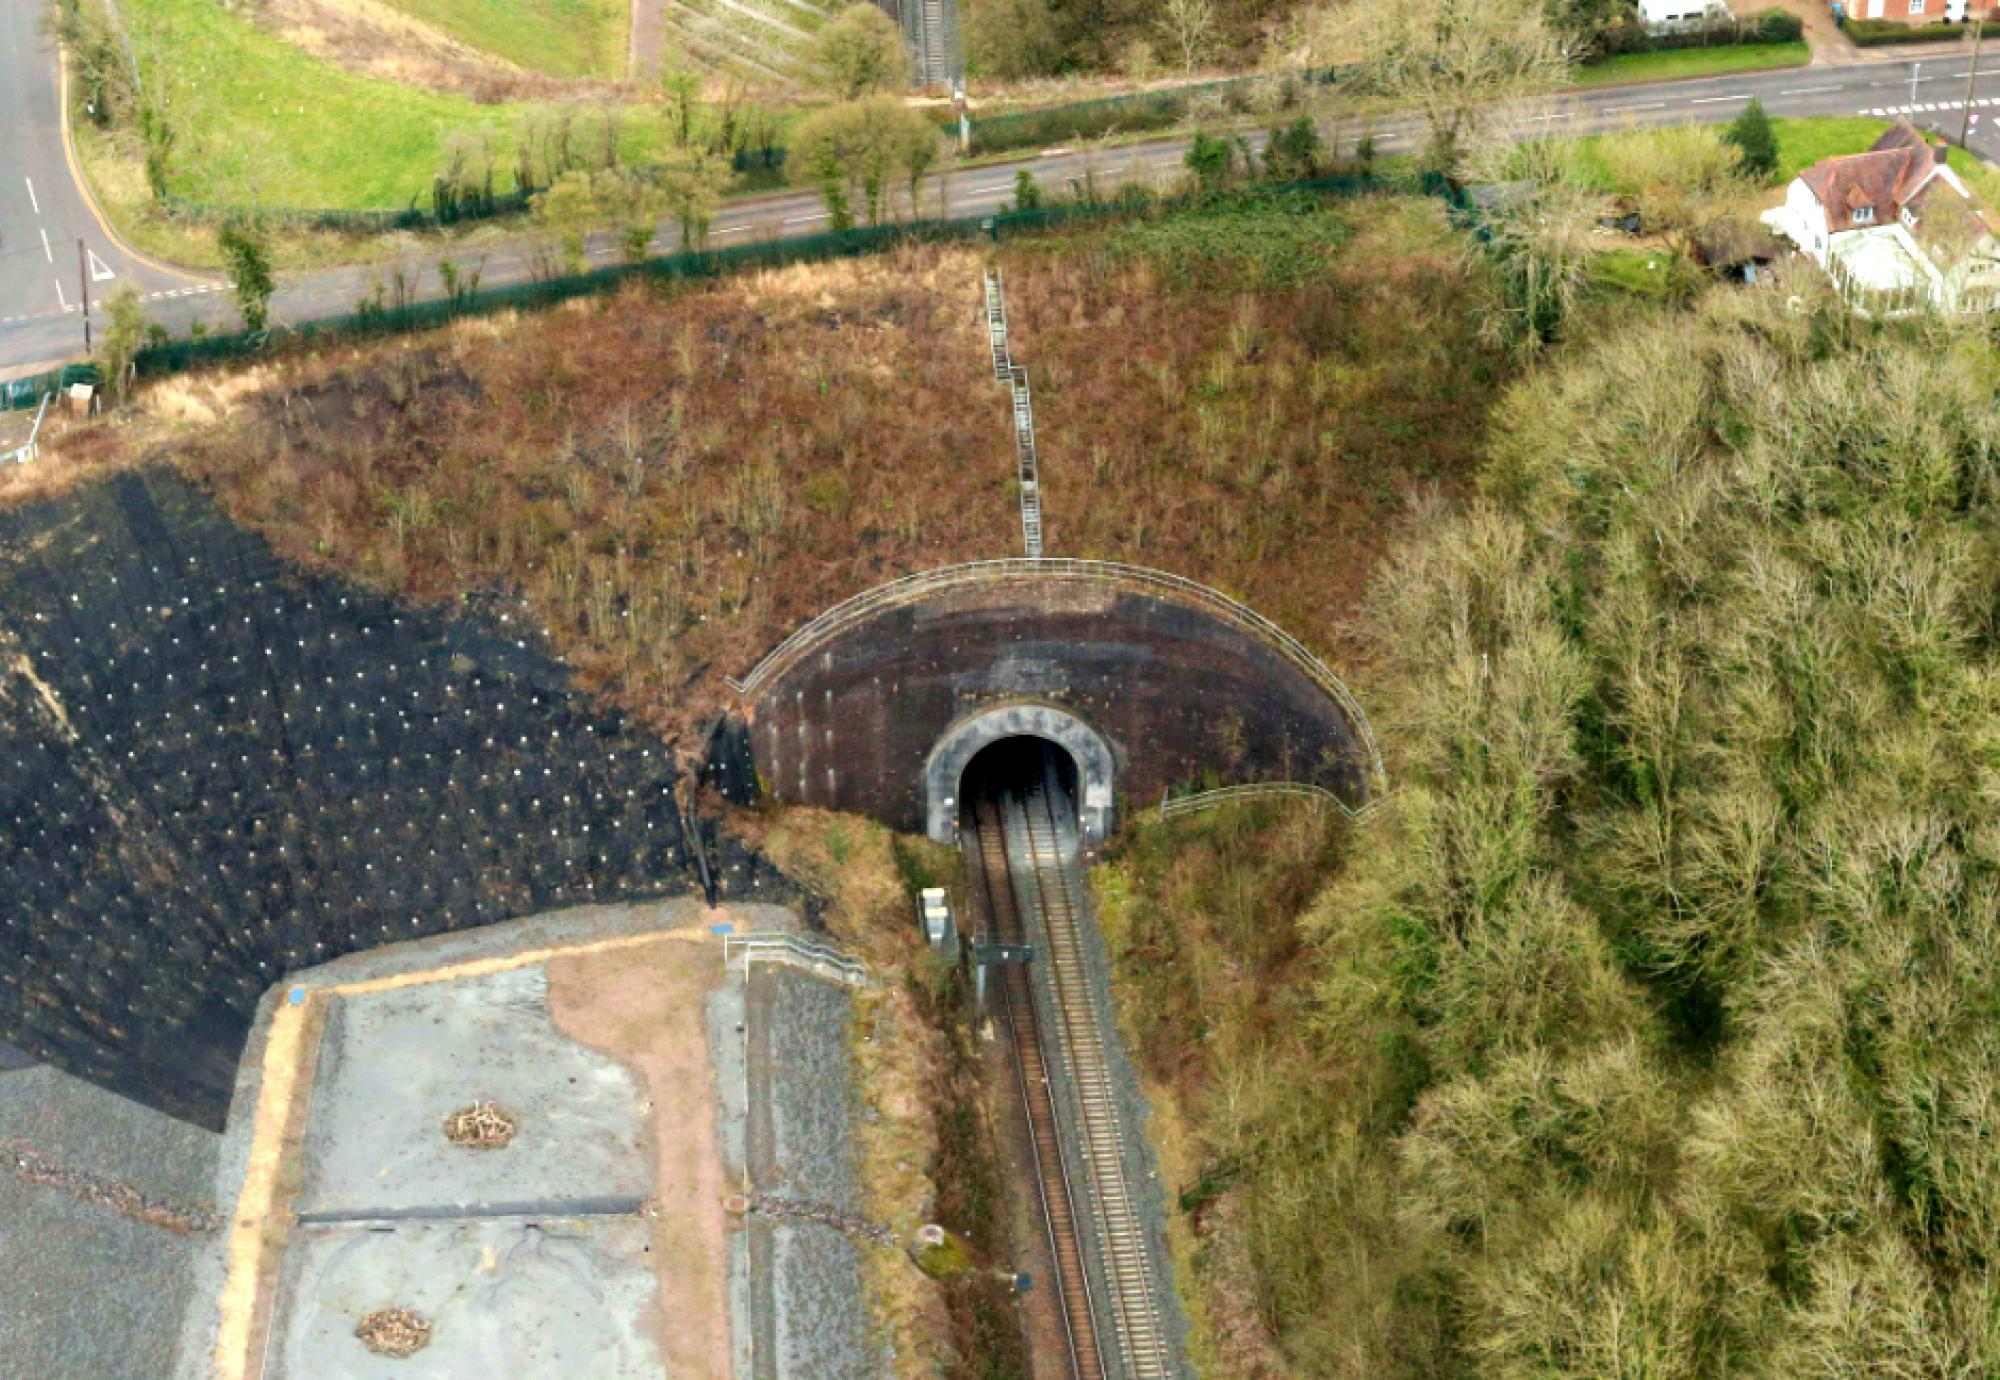 Harbury tunnel aerial view, via Network Rail